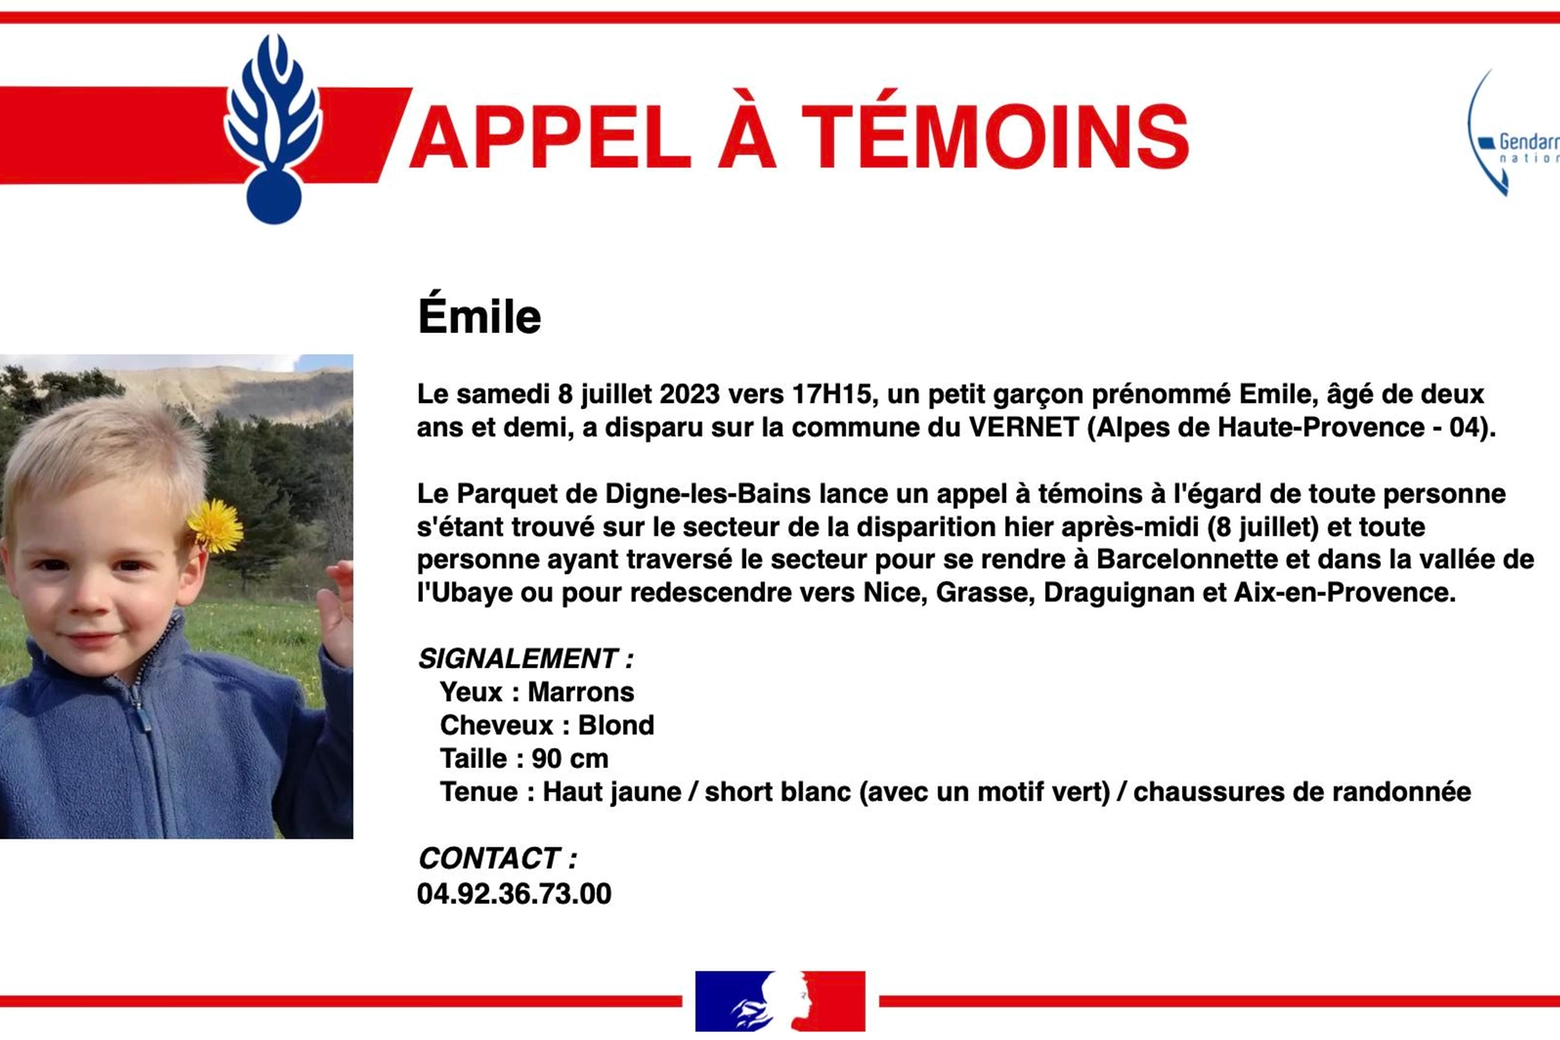 L'appello diffuso dalle autorità subito dopo la scomparsa di Emile